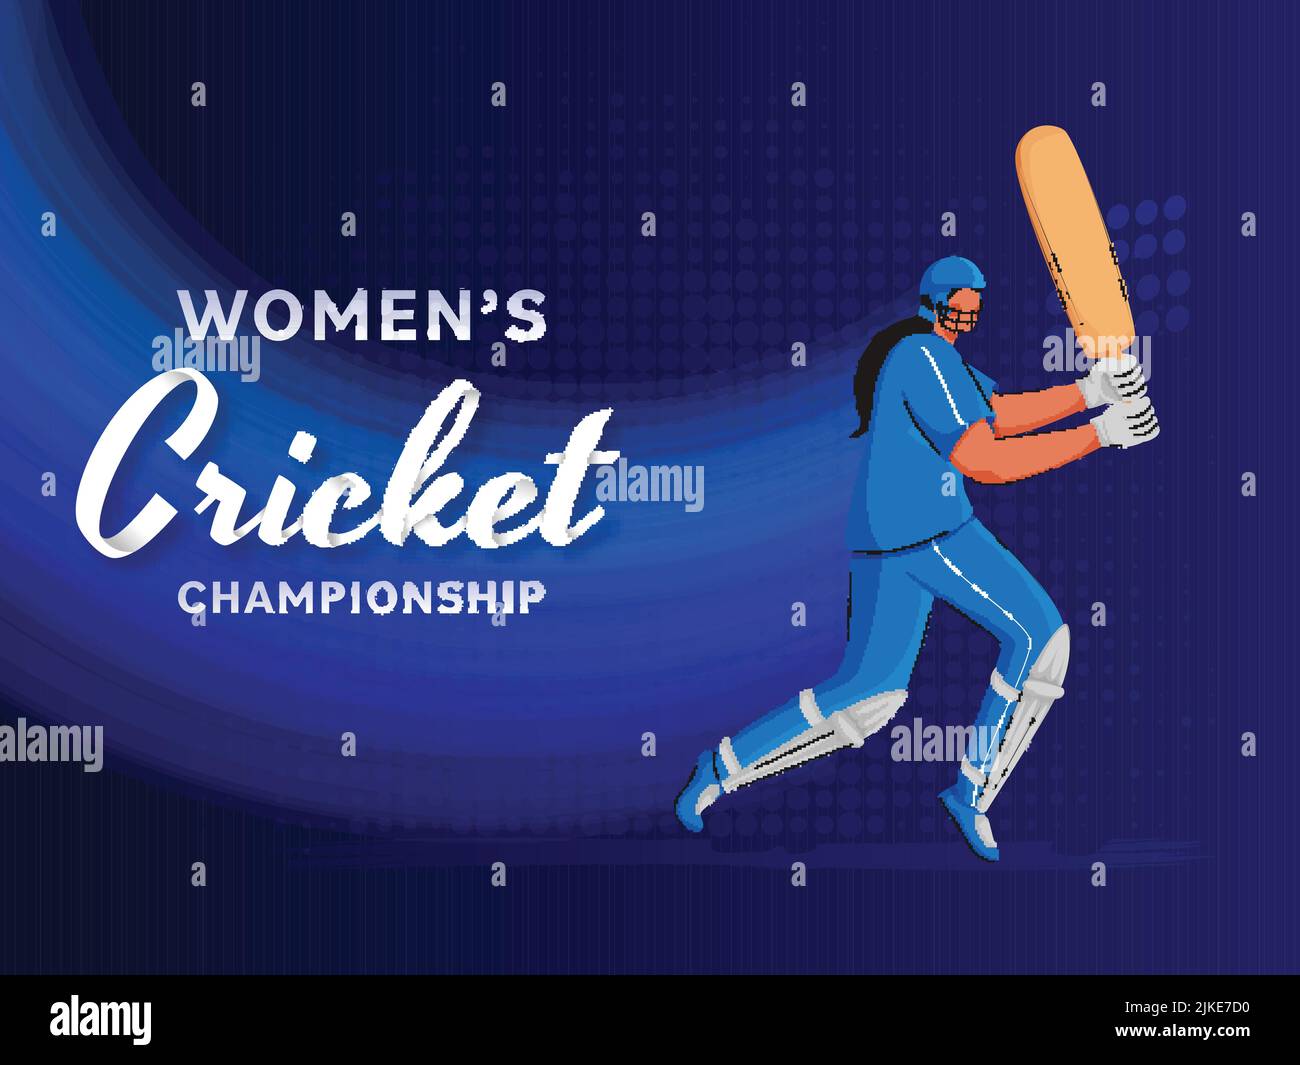 Cricket Championship-Konzept für Frauen mit gesichtslosem weiblicher Batter-Spielercharakter auf blauem Hintergrund. Stock Vektor